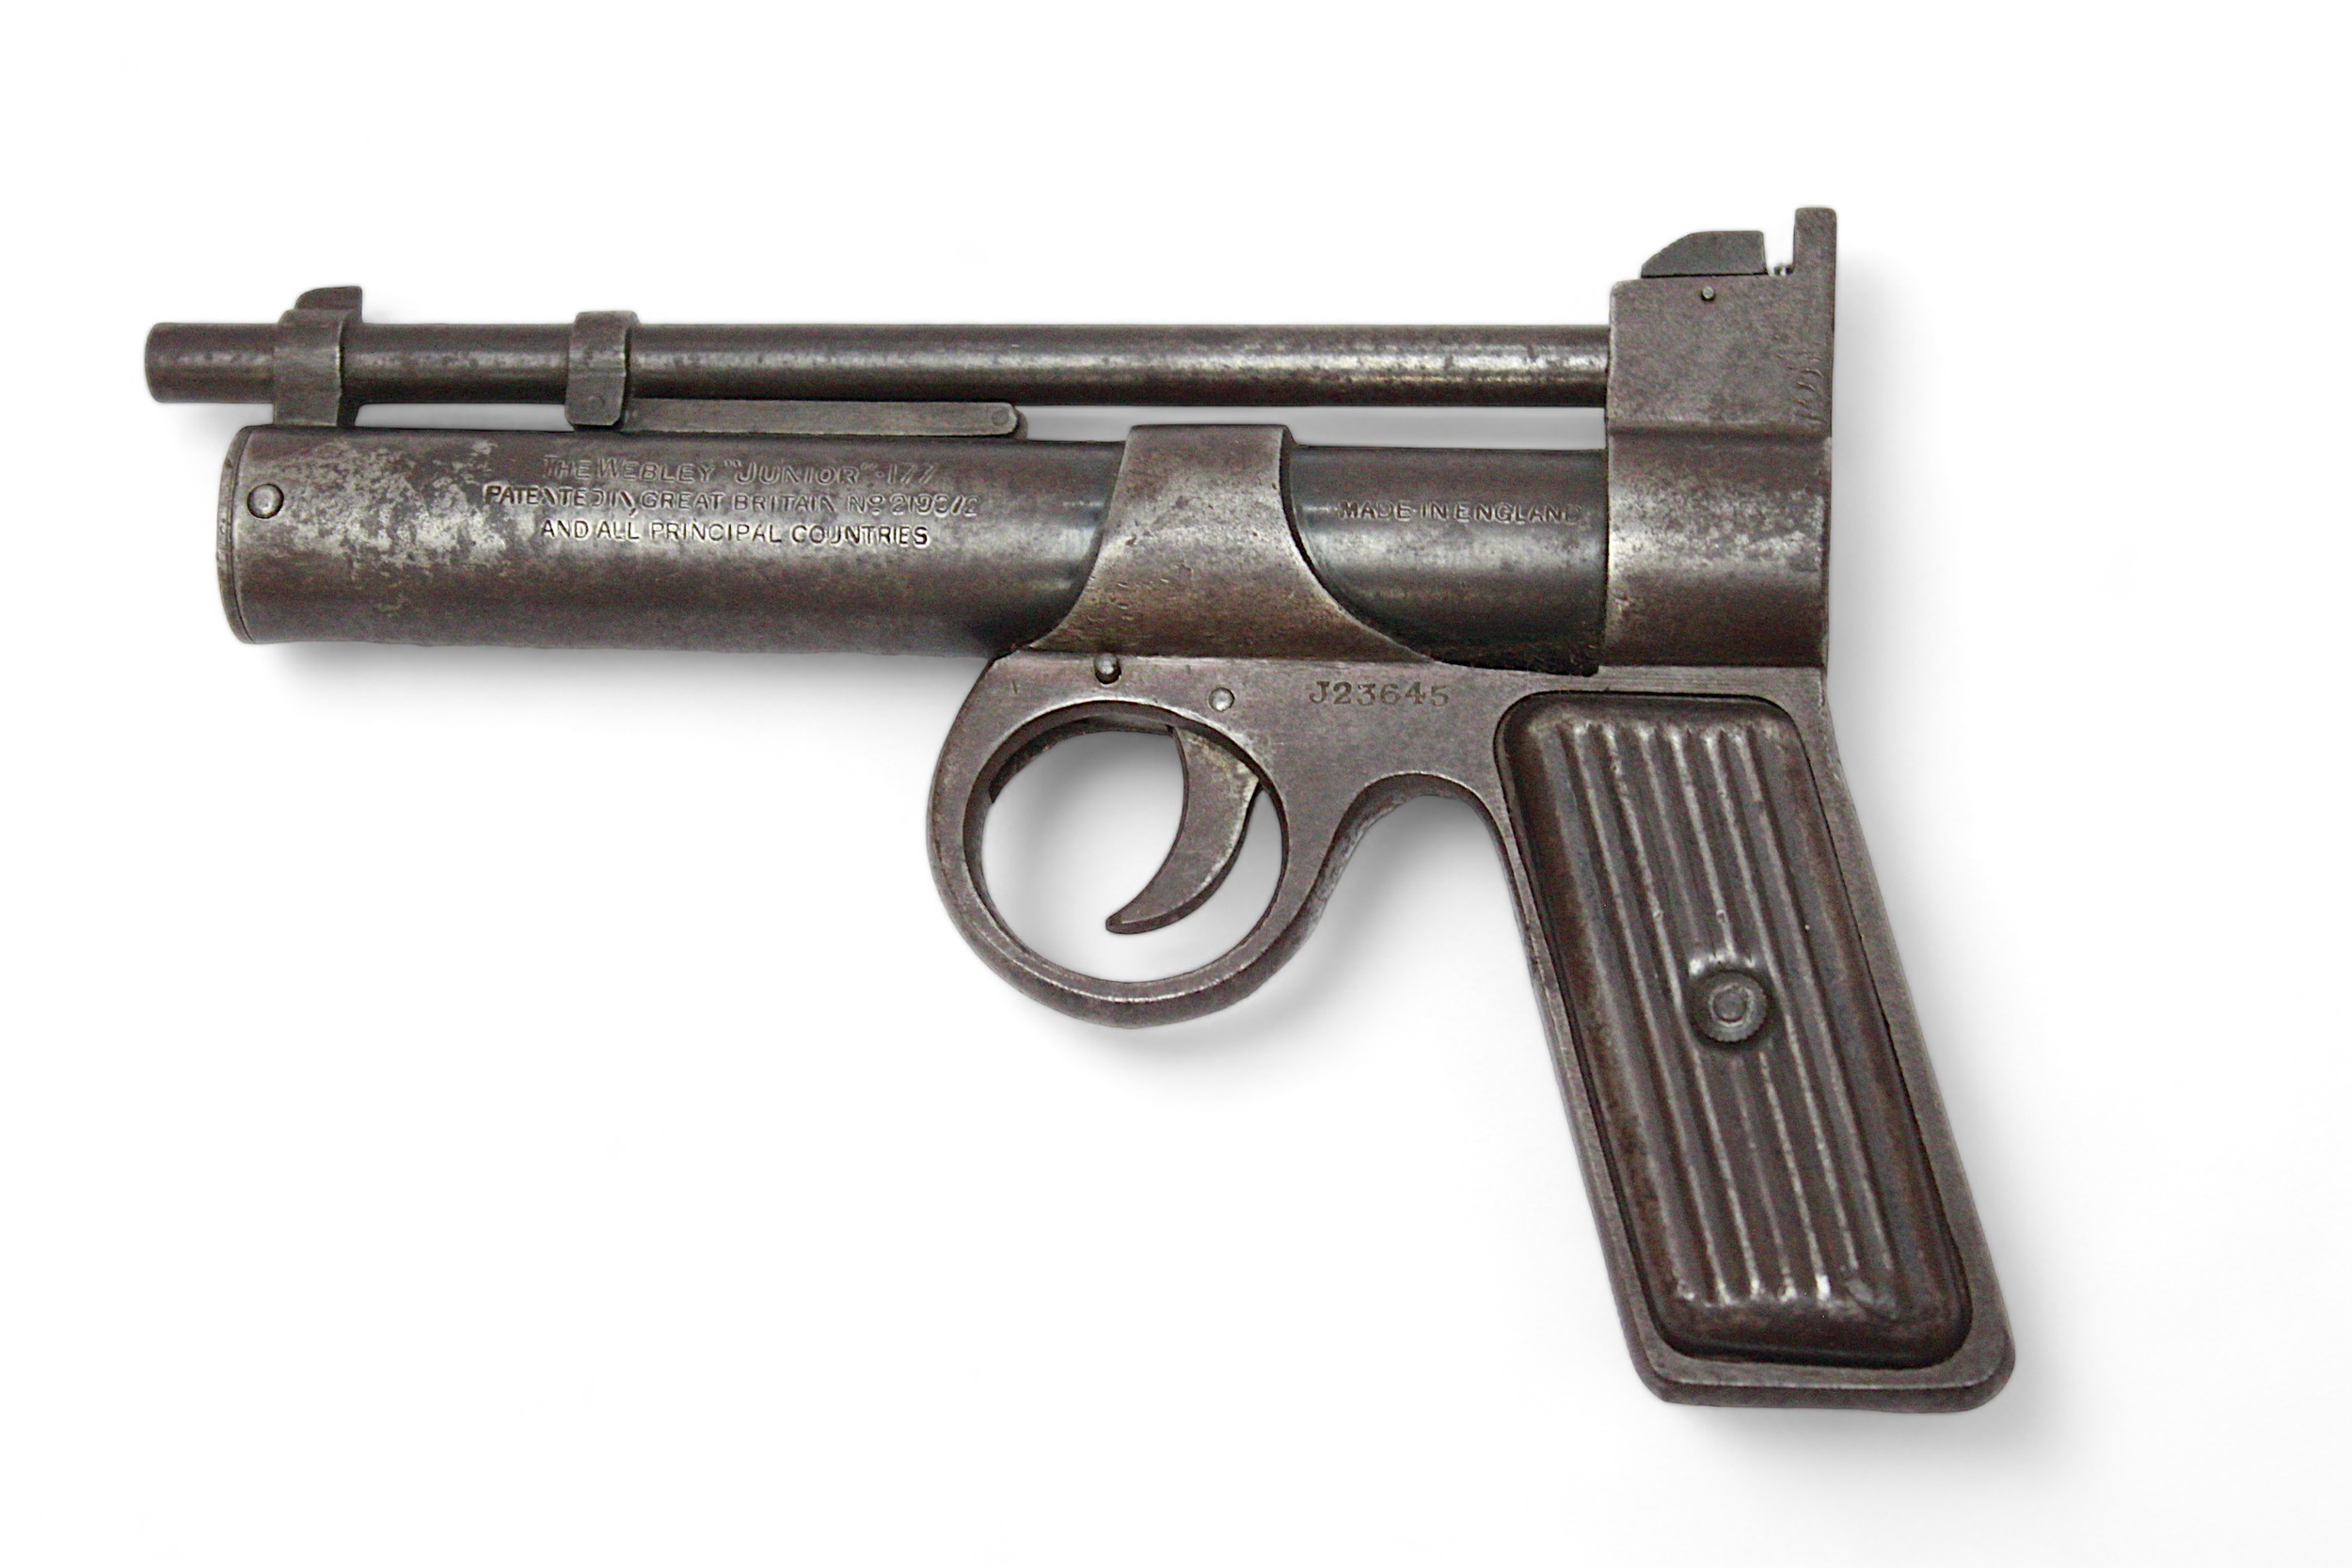 A Webley 'Junior' .177 Air Pistol, wity vertical-ribbed pressed metal grips, serial number J23645. - Image 2 of 2